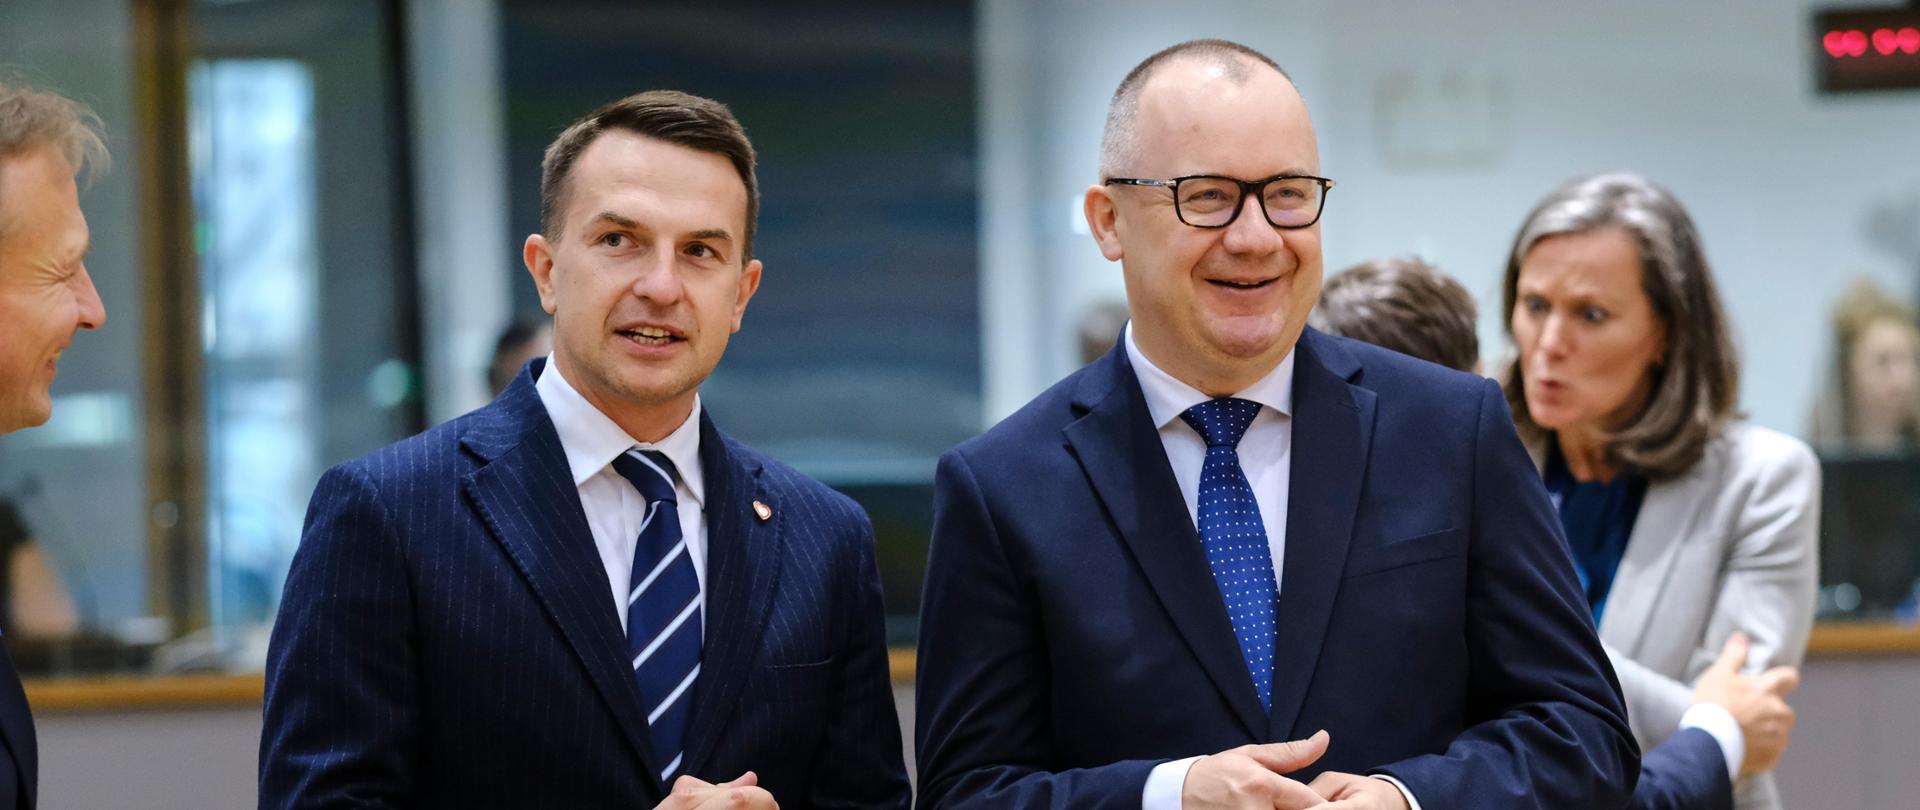 Minister Adam Szłapka and minister Adam Bodnar, fot. newsroom.consilium.europa.eu.